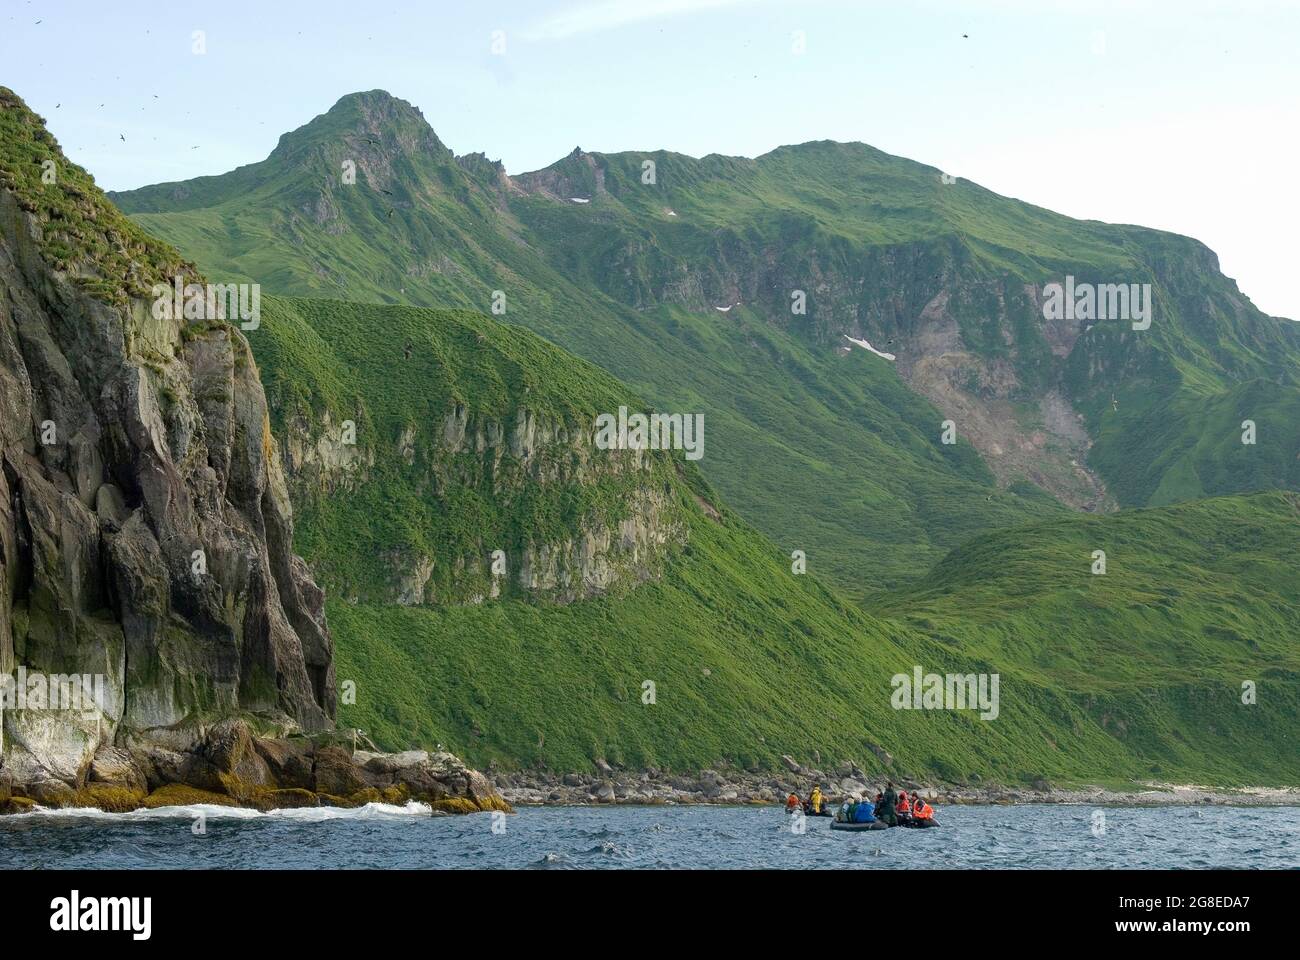 Im Inneren der ertrunkenen Caldera von Ekarma Island, Kuril Islands, Russian Far East Stockfoto